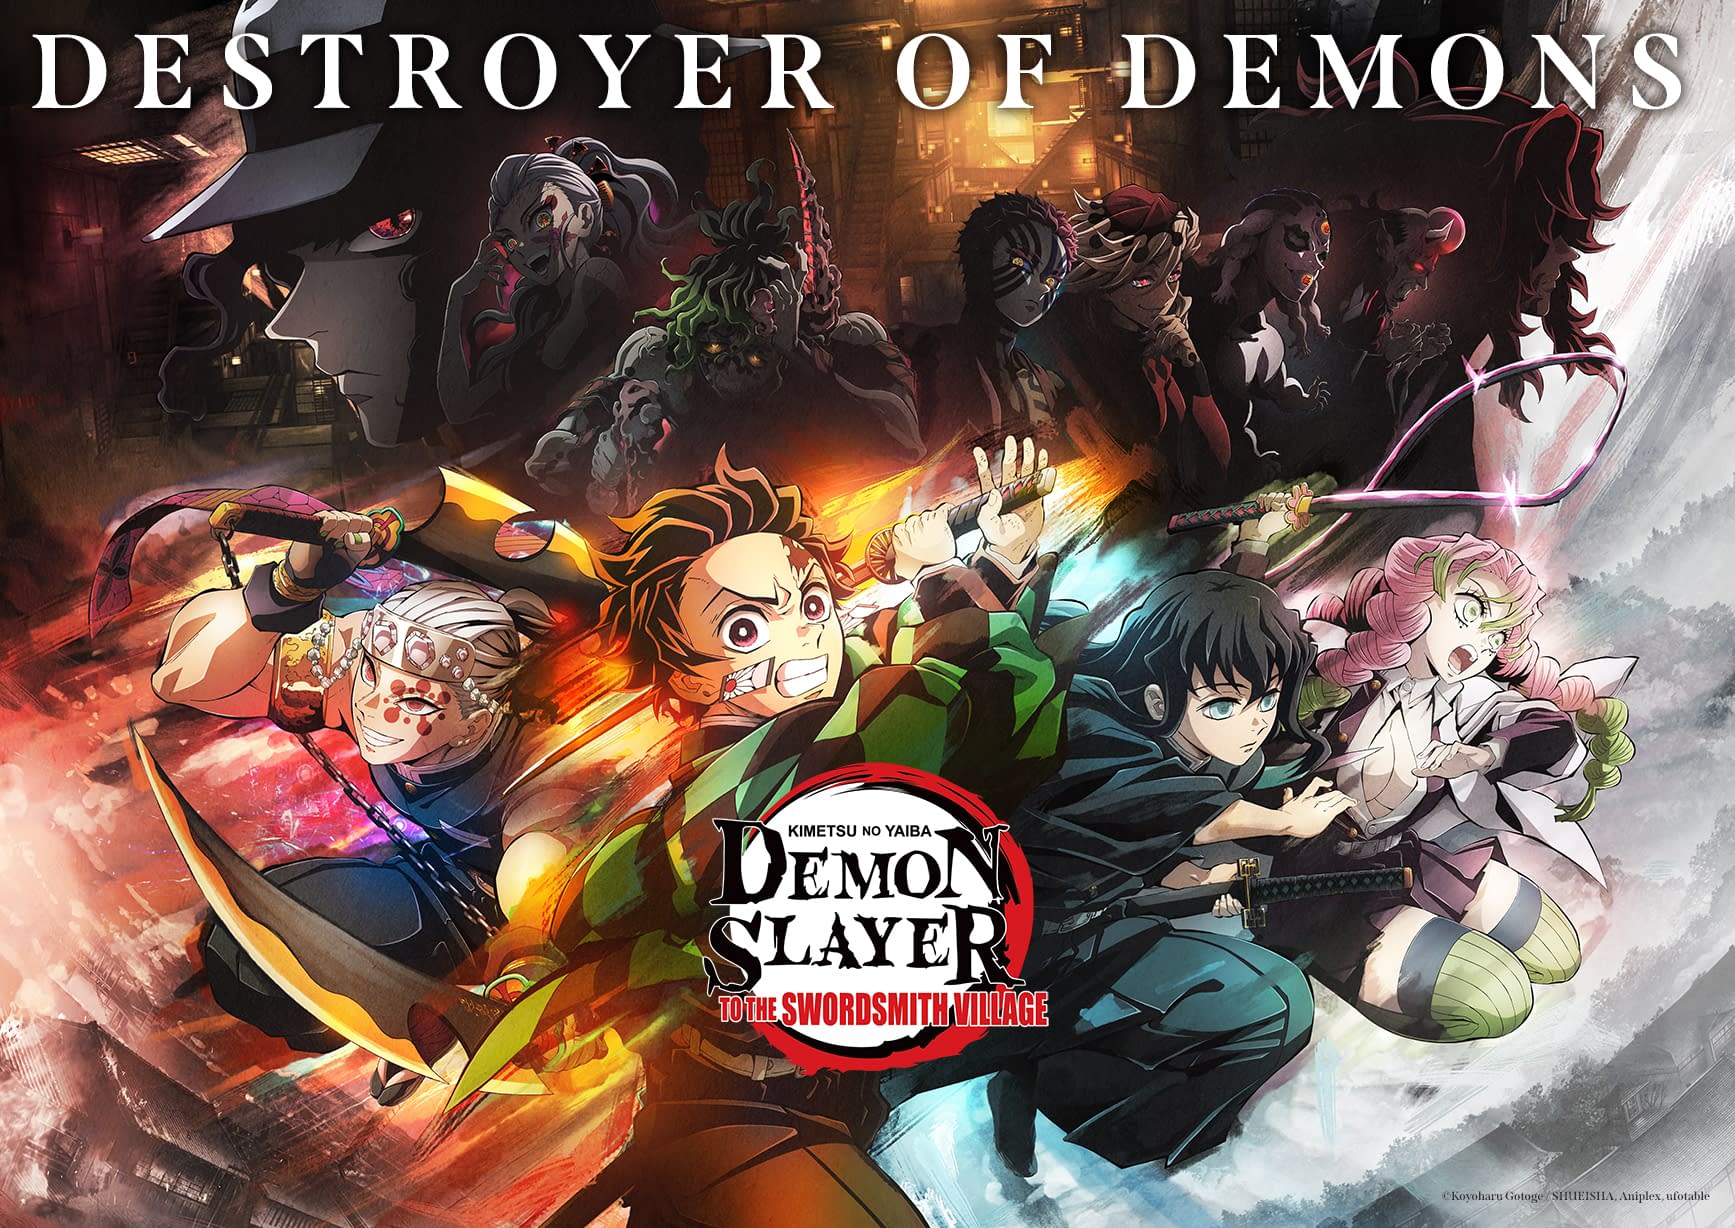 Especial de Demon Slayer 3 com Menu Anime na Cinema City